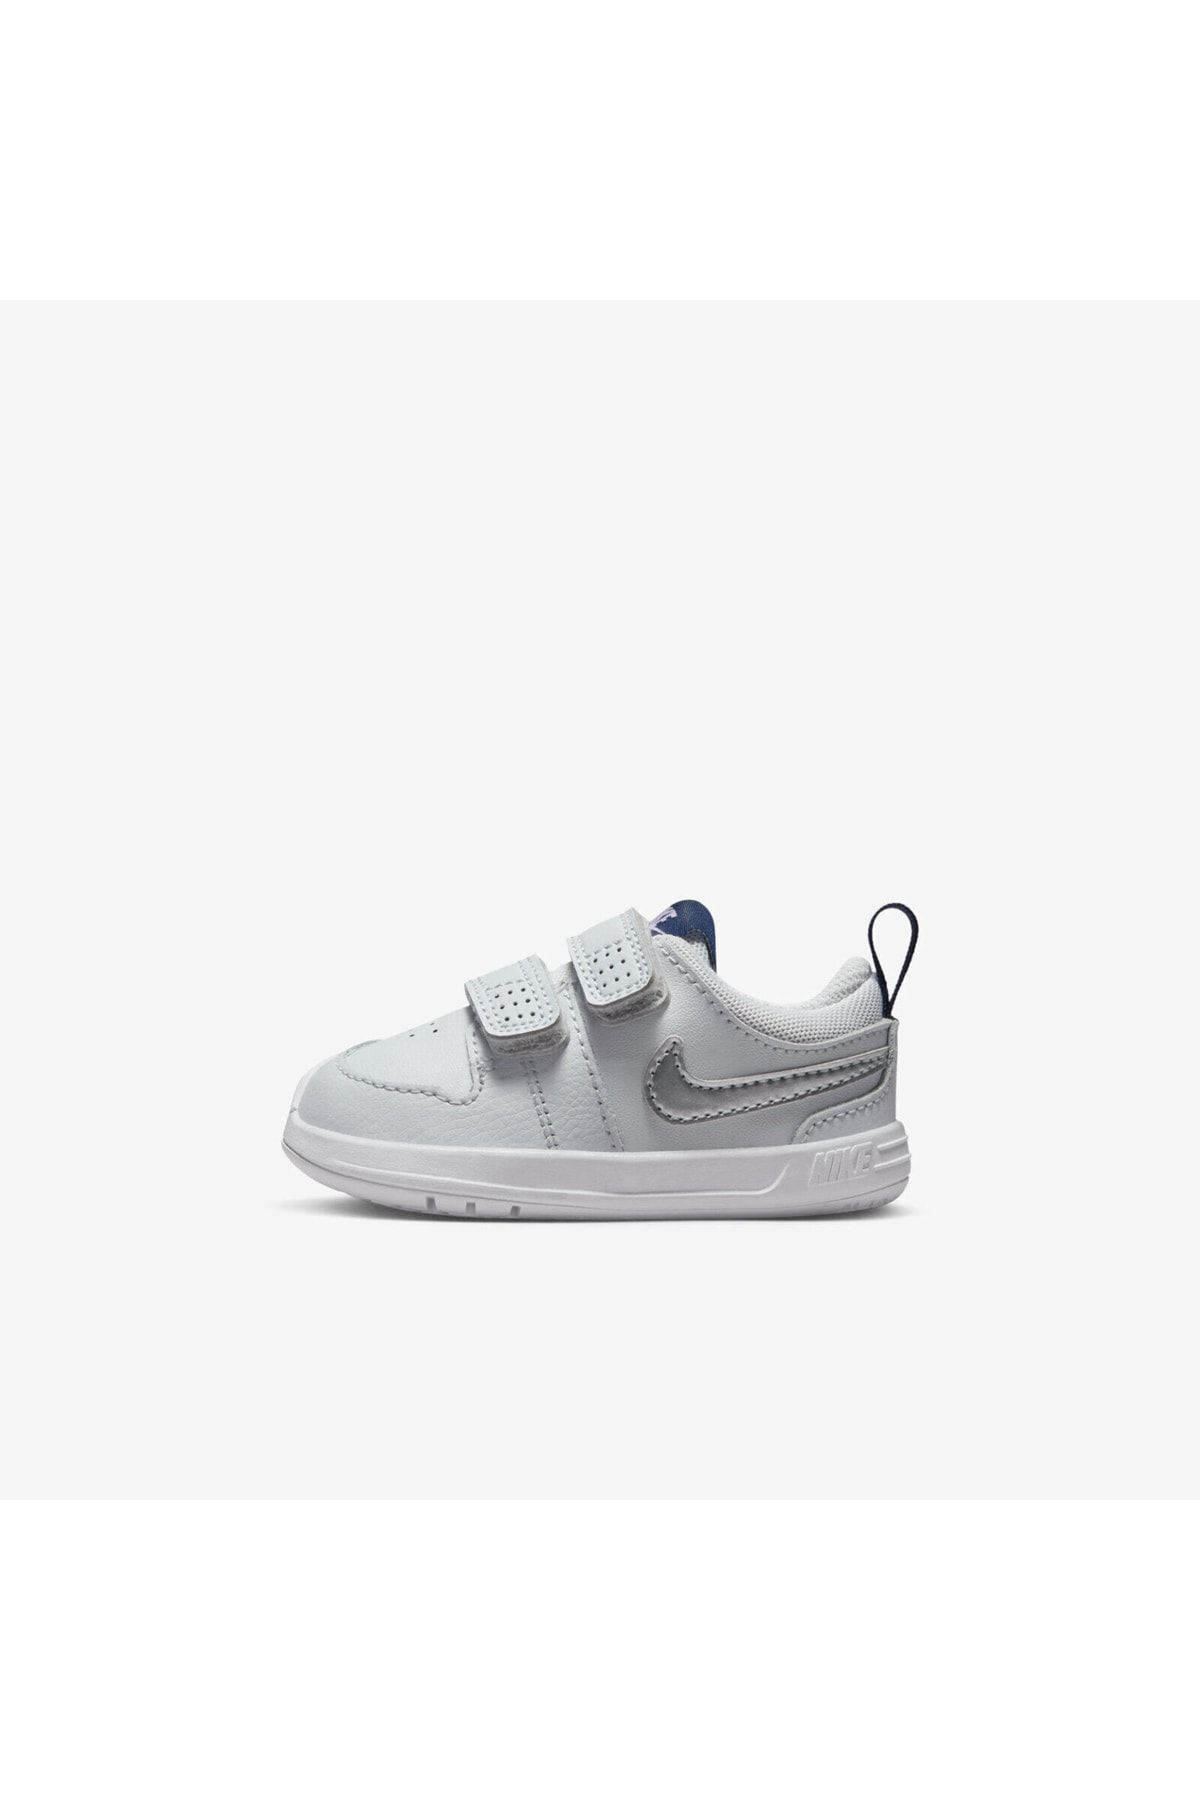 Nike Siyah - Gri - Gümüş Bebek Yürüyüş Ayakkabısı Ar4162-009 Pıco 5 (tdv)